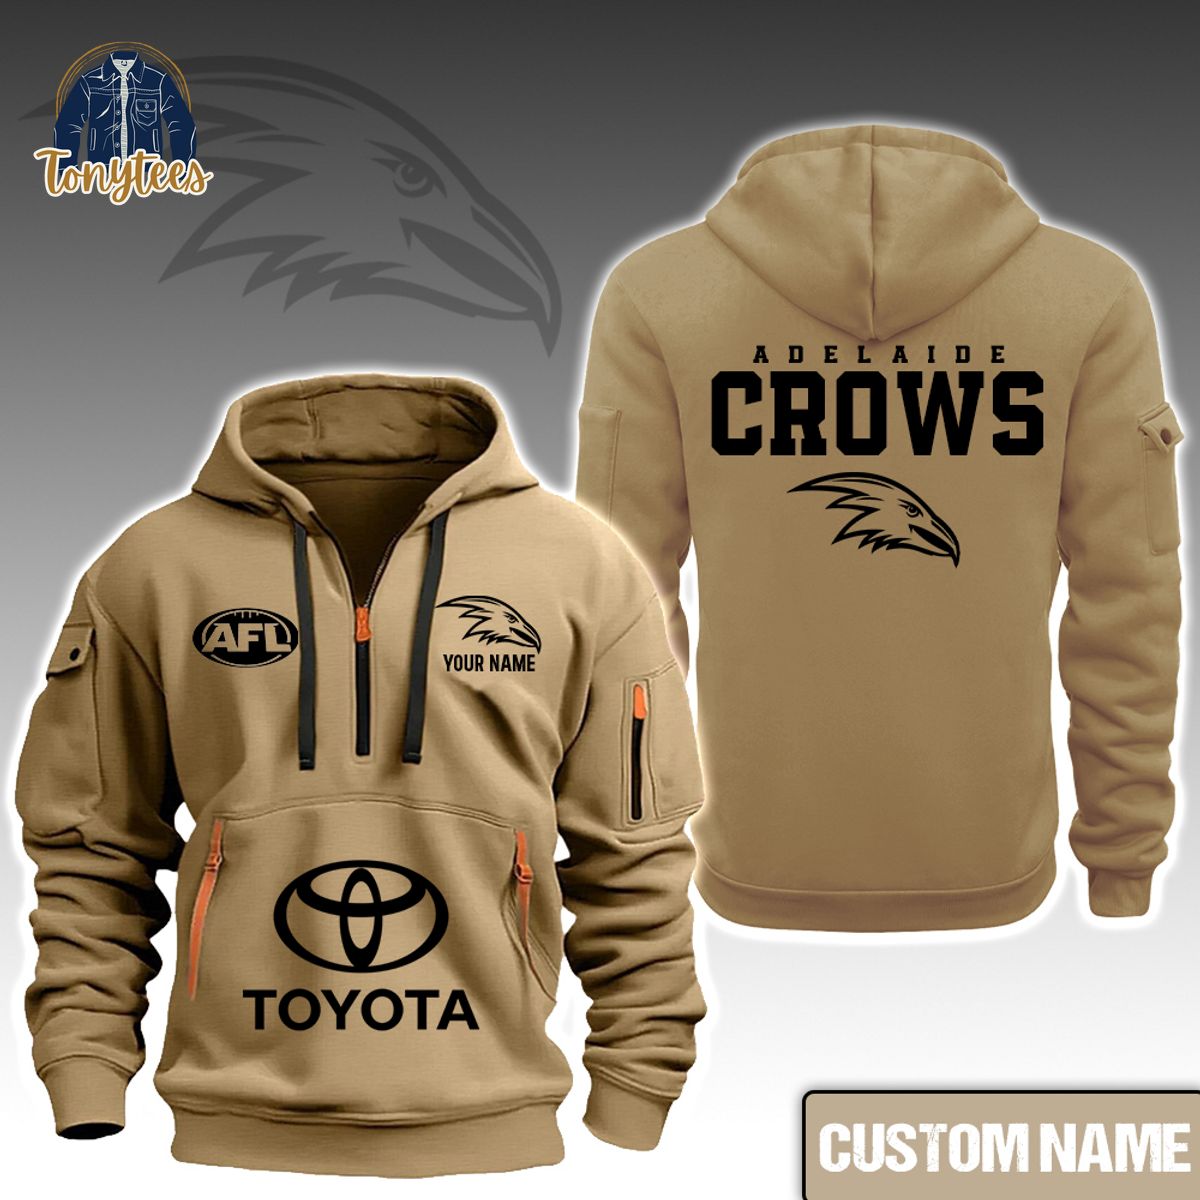 AFL Adelaide Crows Custom Name New Heavy Hoodie